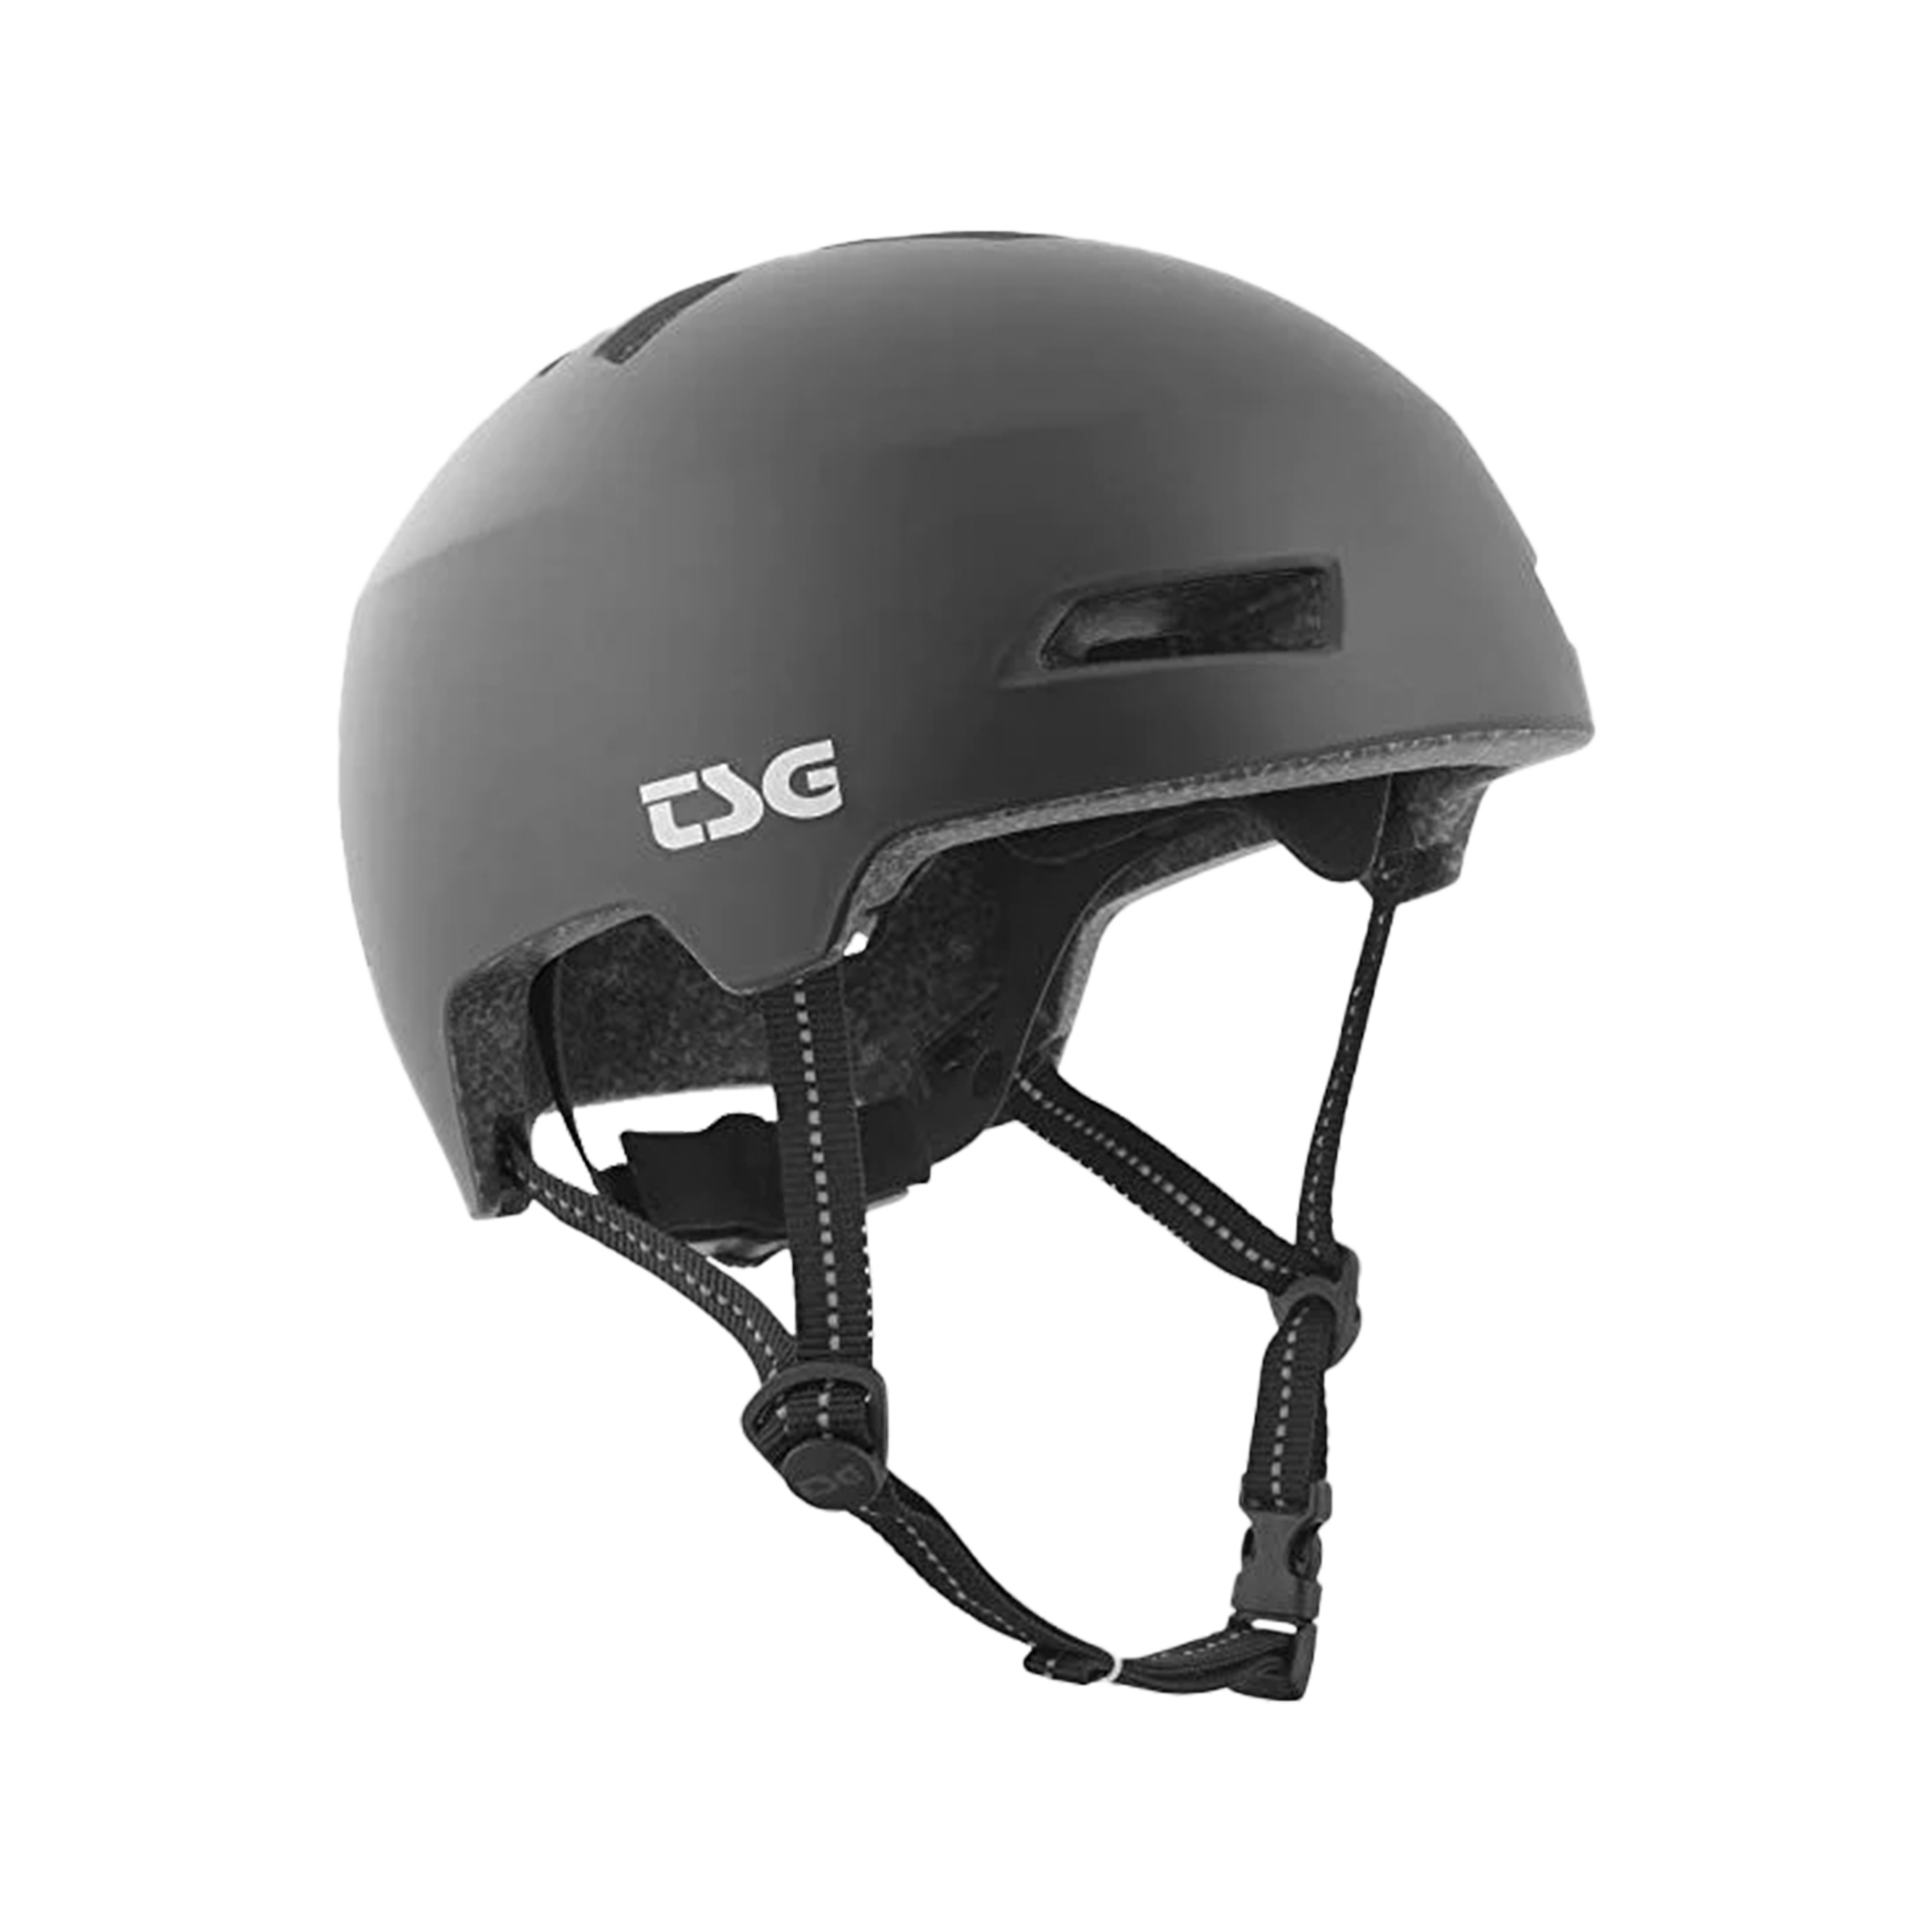 TSG Status Rear LED Light Helmet